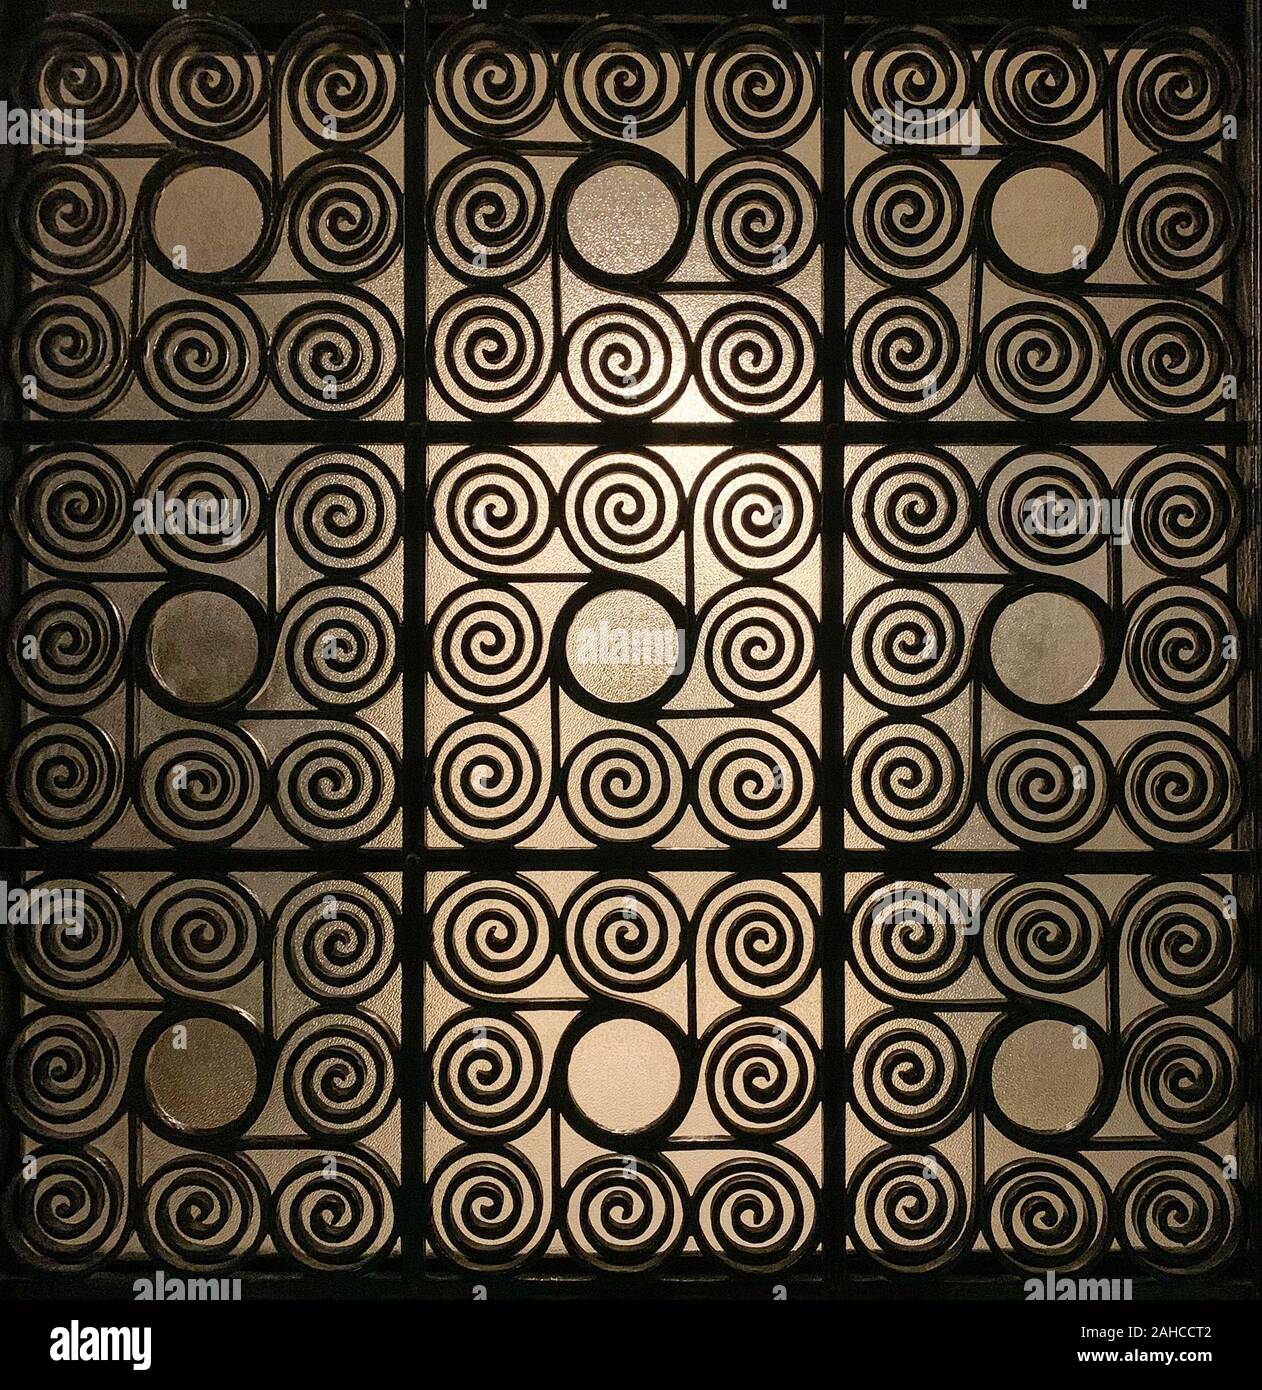 Greco battuto cancello di ferro griglia, ornata con riccamente intrecciata e spirali con un vetro smerigliato in background, che è leggermente illuminato. Foto Stock